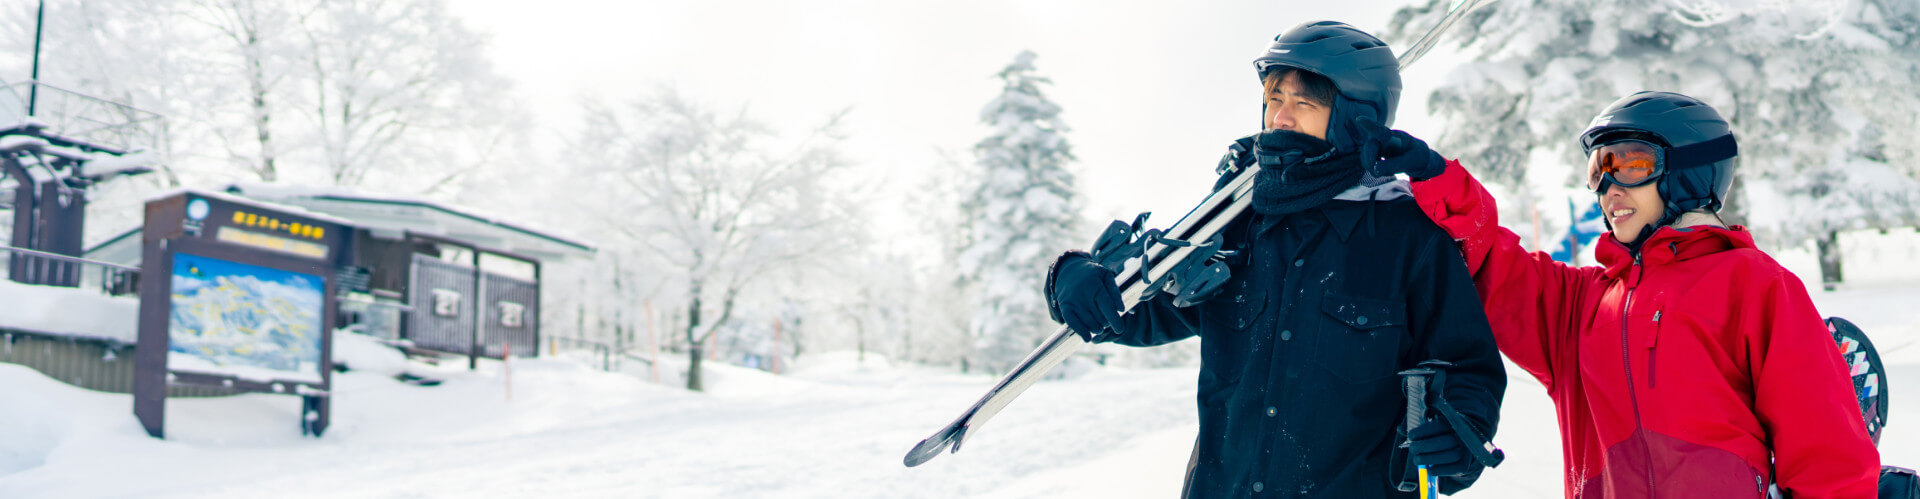 Deux personnes profitant des pistes de ski en hiver sous la neige avec des sachets de nicotine VELO.